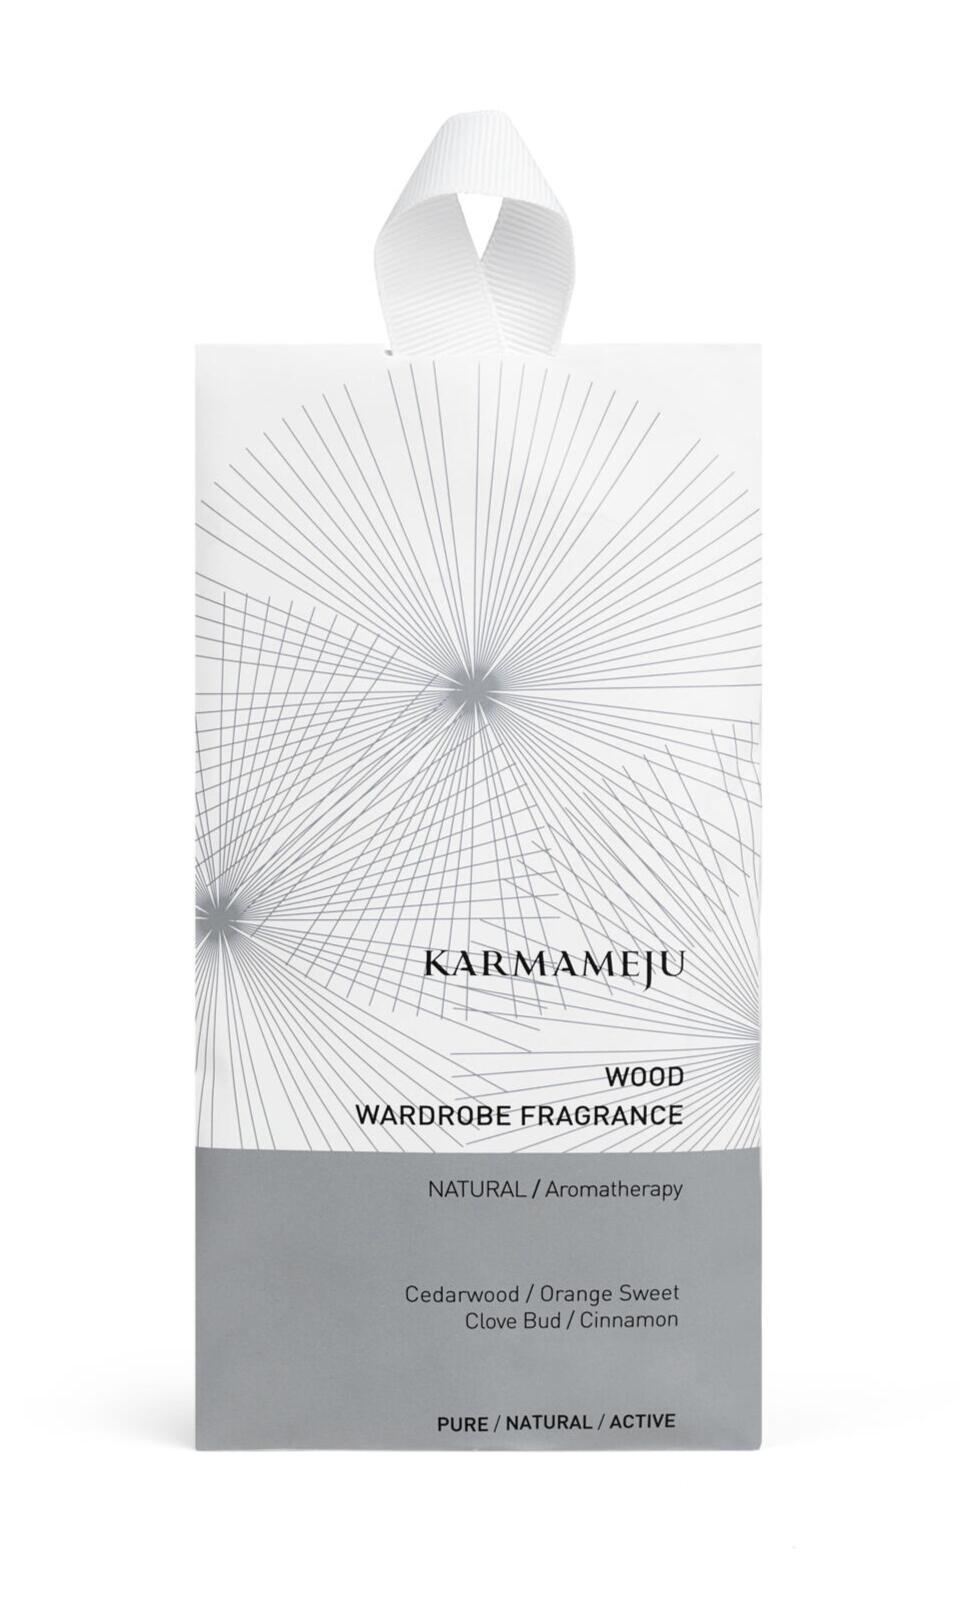 Billede af Karmameju wood wardrobe fragrance